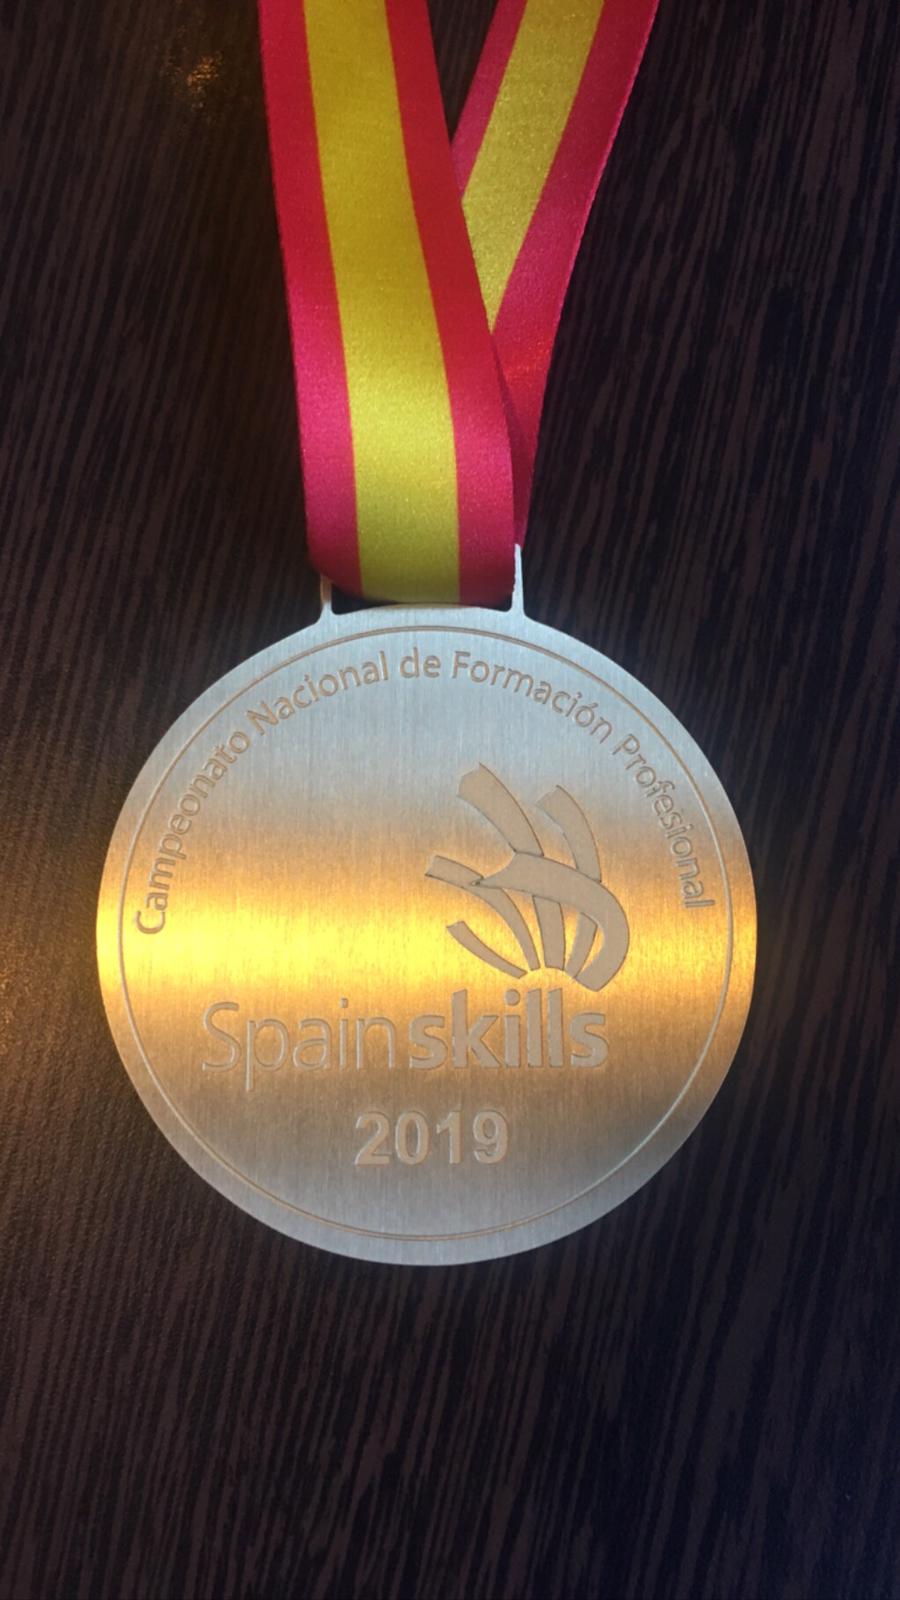 Gabriel Tudor guanya la medalla d'or en l'SpainSkills 2019!